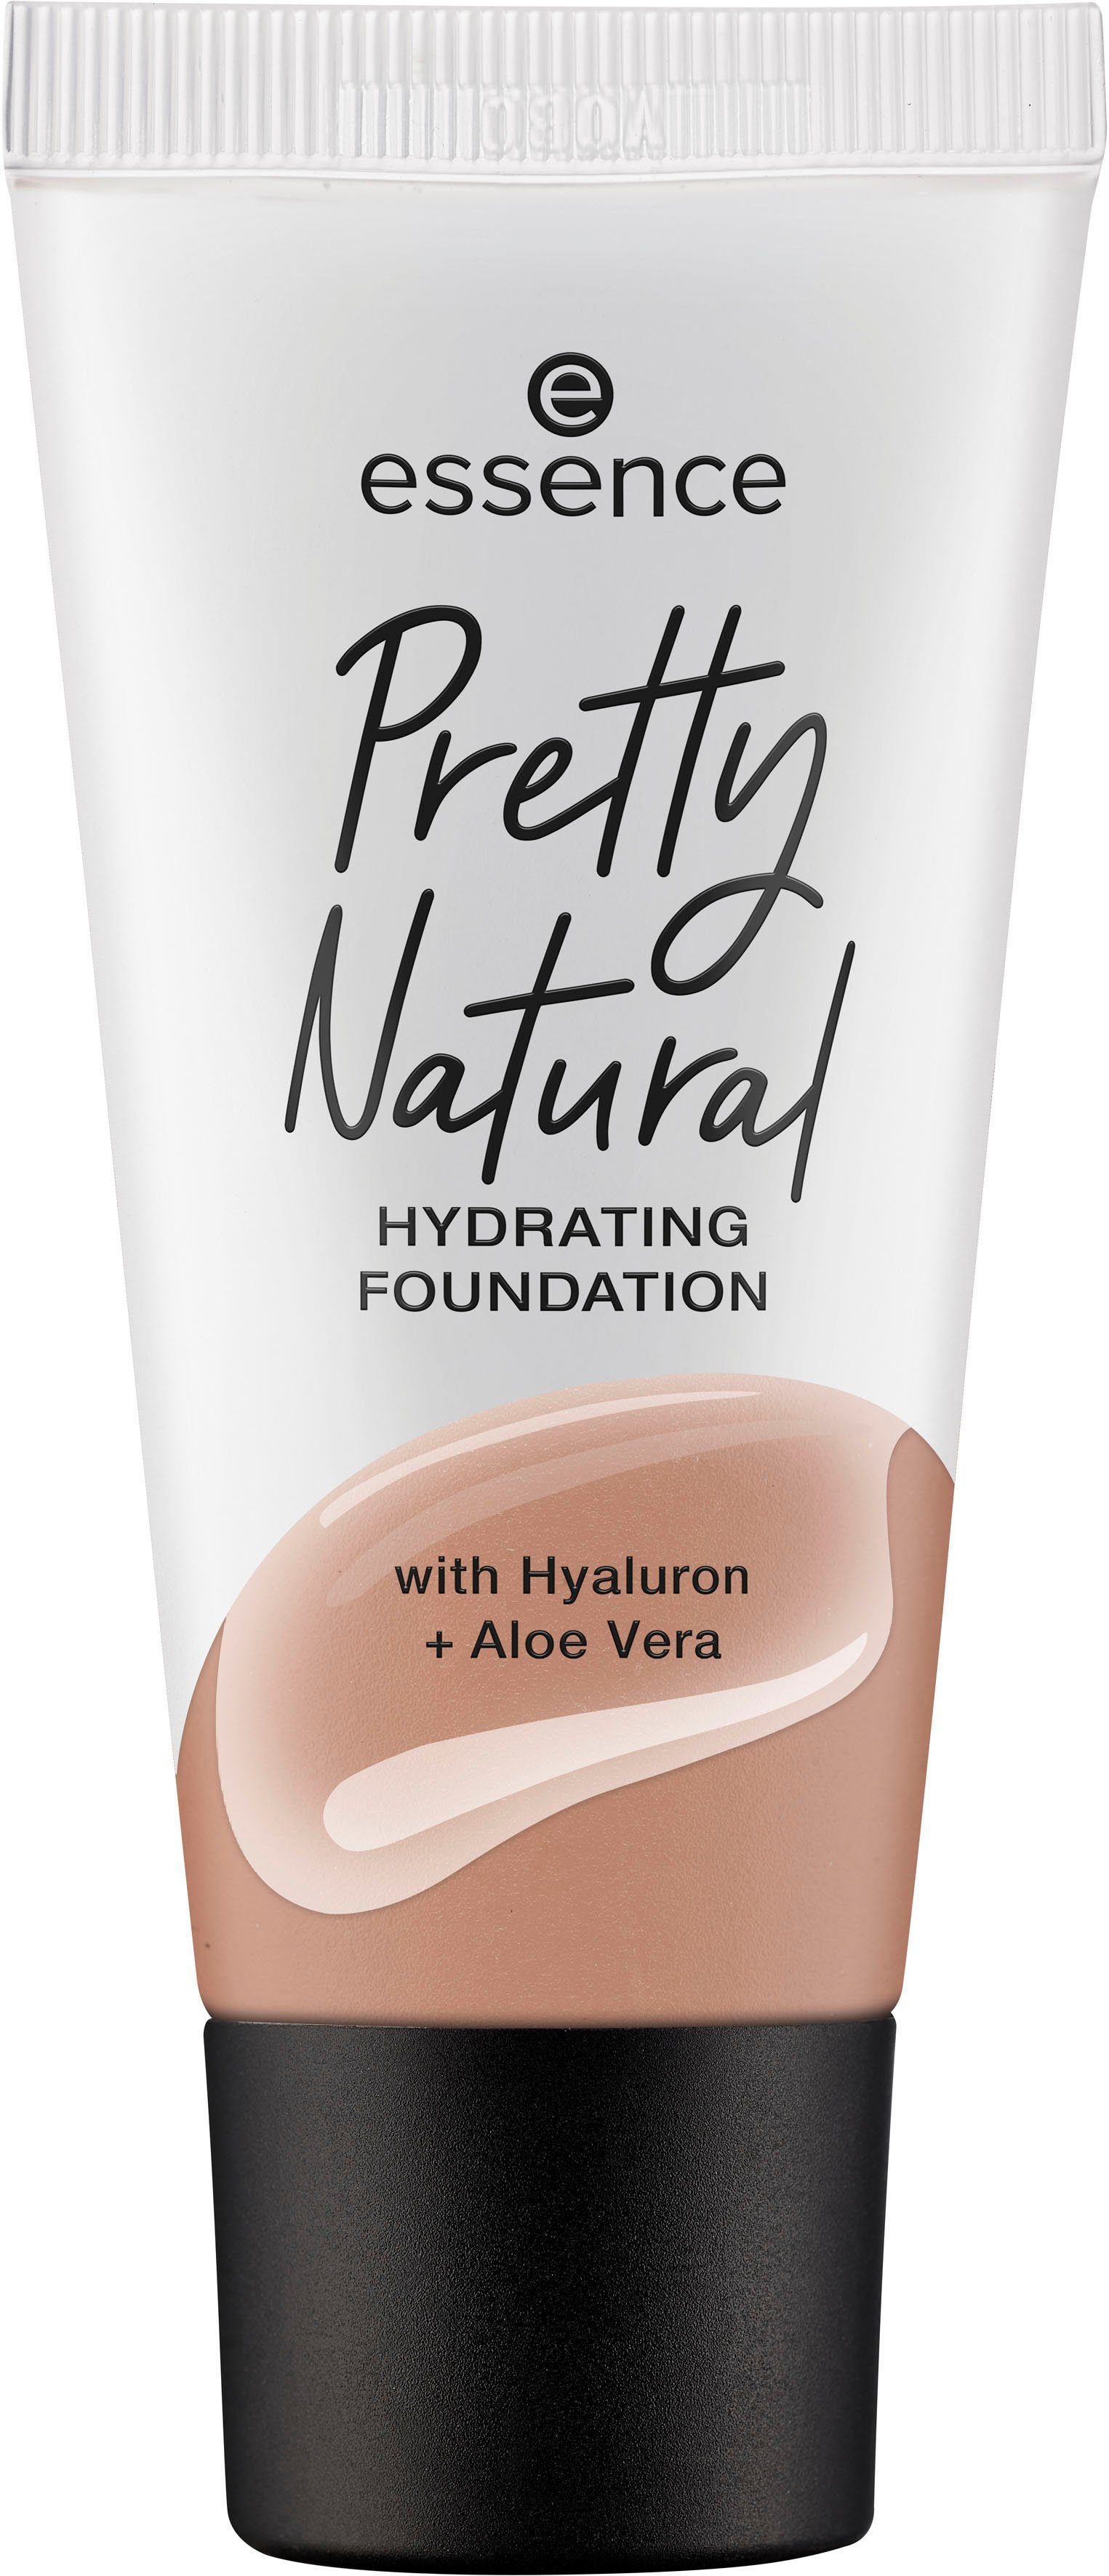 Essence Foundation Pretty Natural HYDRATING, Warm Nutmeg 3-tlg